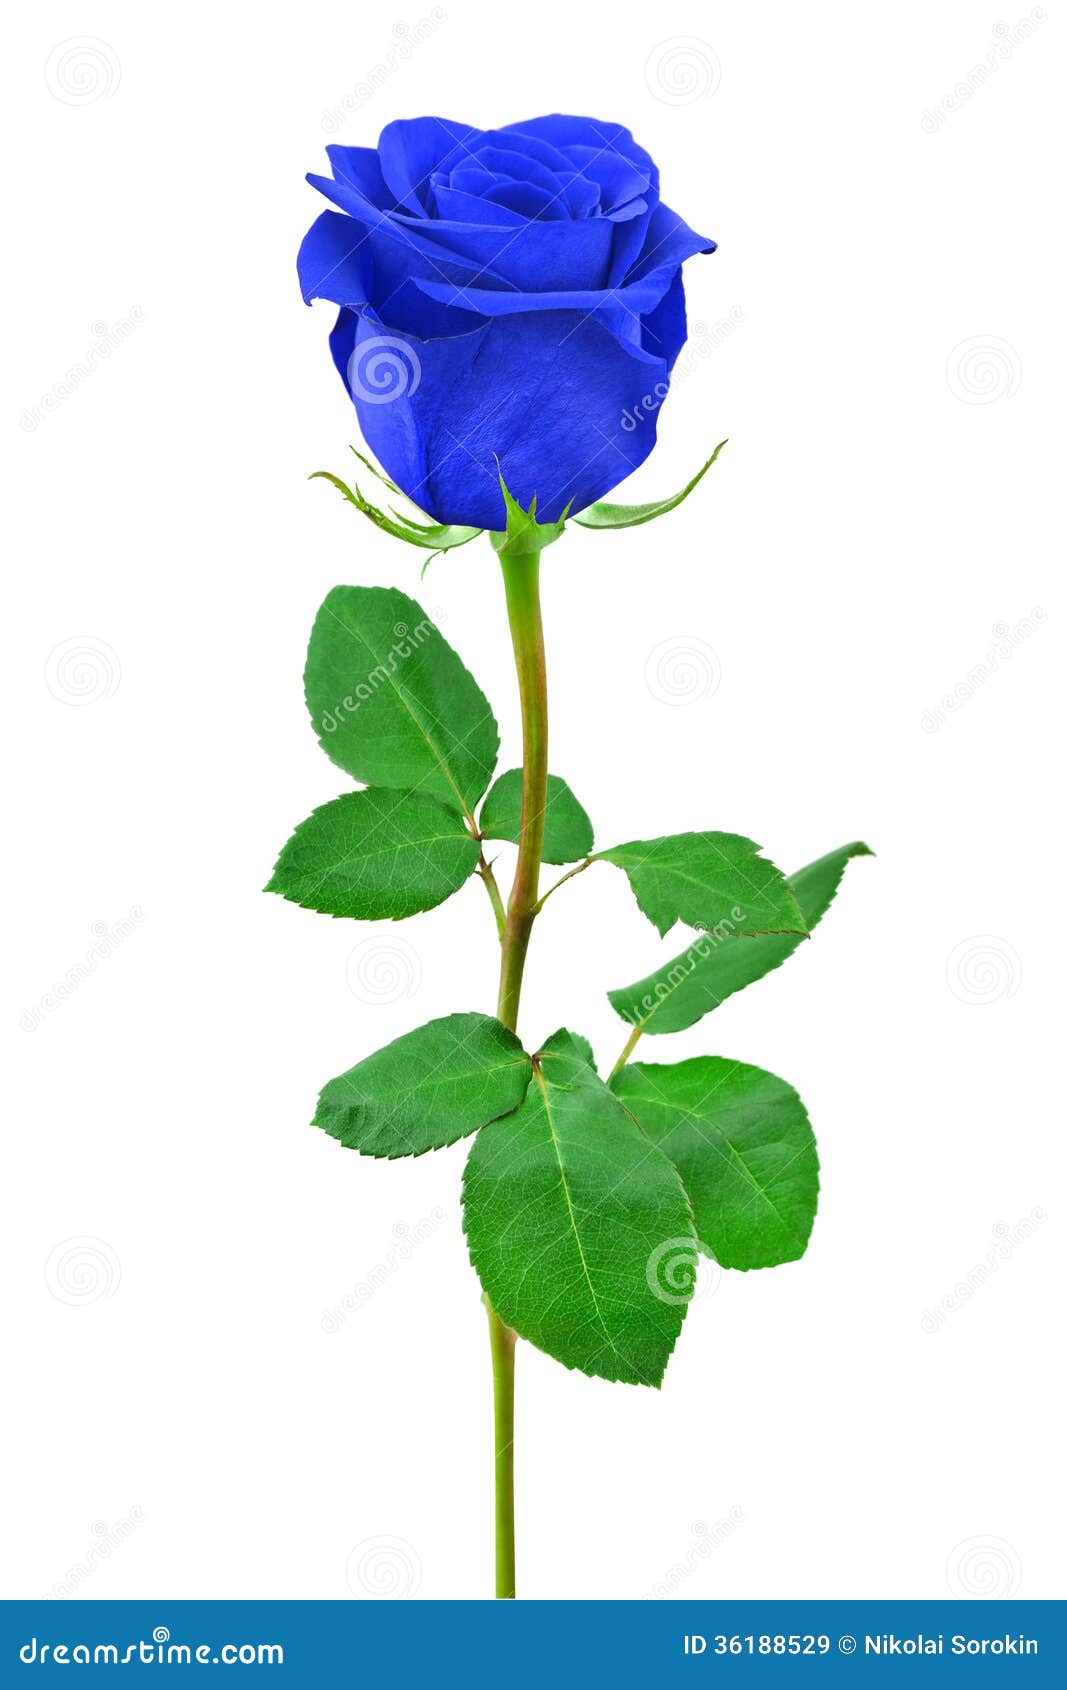 Blue rose stock image. Image of flower, single, background - 36188529